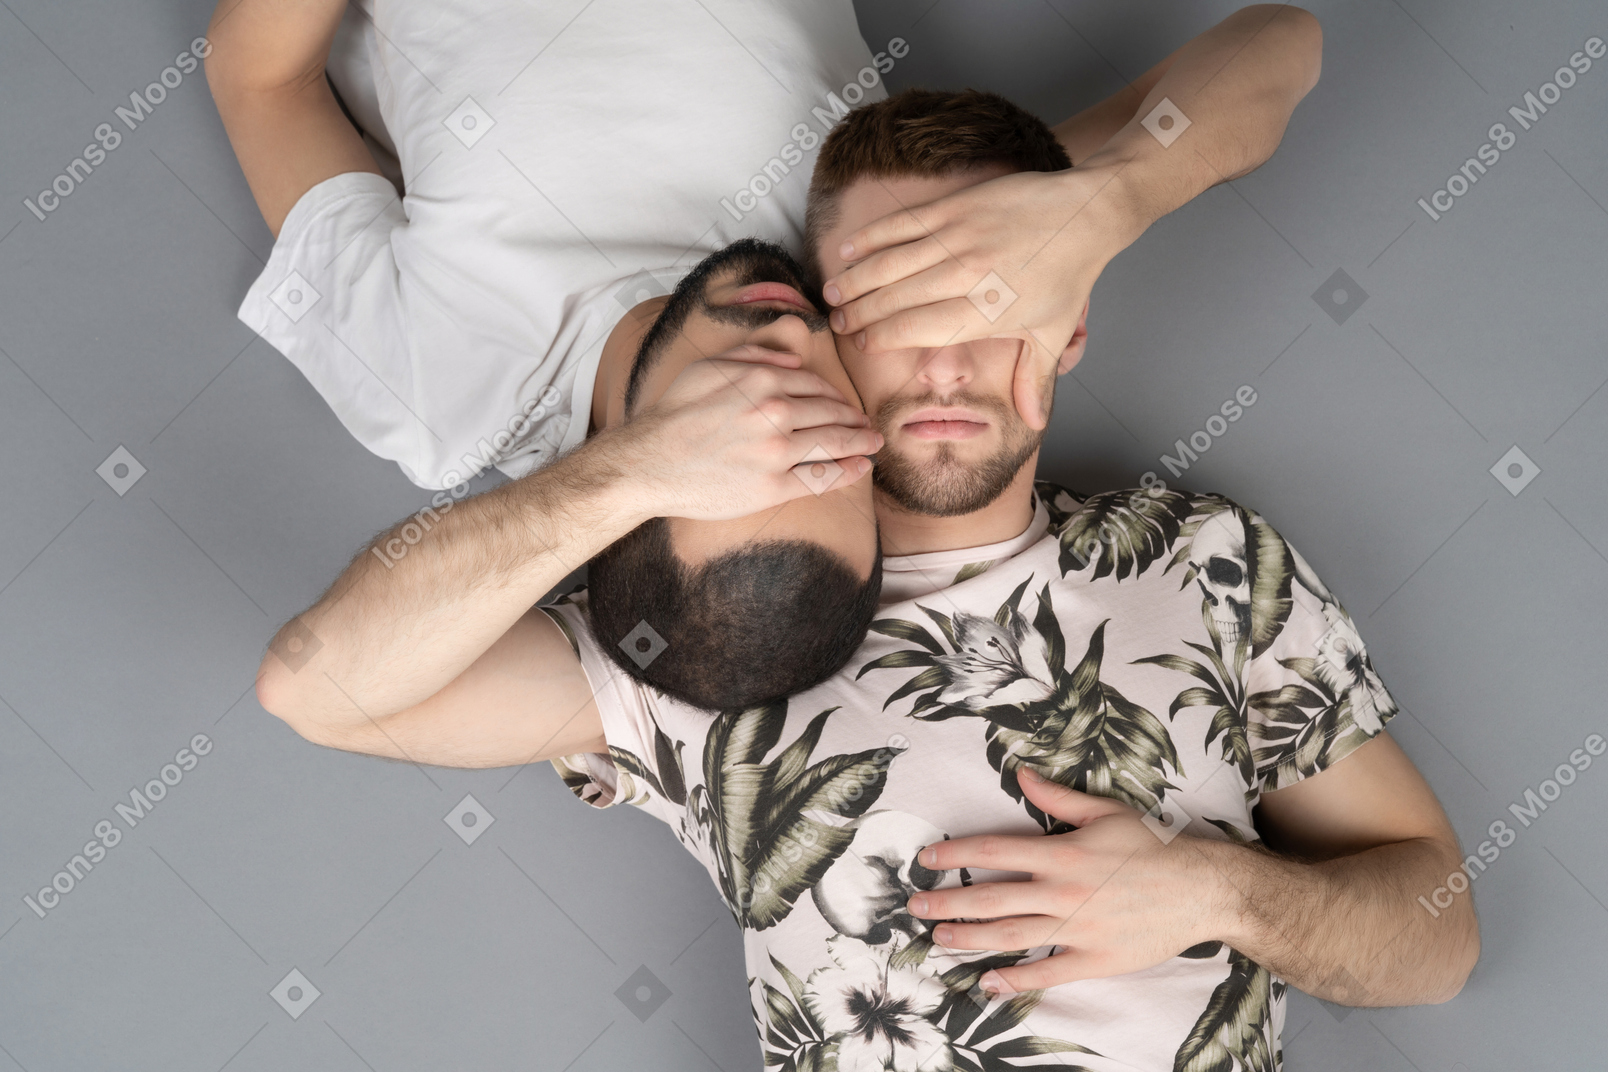 Фото Плоское положение двух молодых кавказских мужчин, лежащих симметрично  голова к голове, закрыв глаза друг другу руками